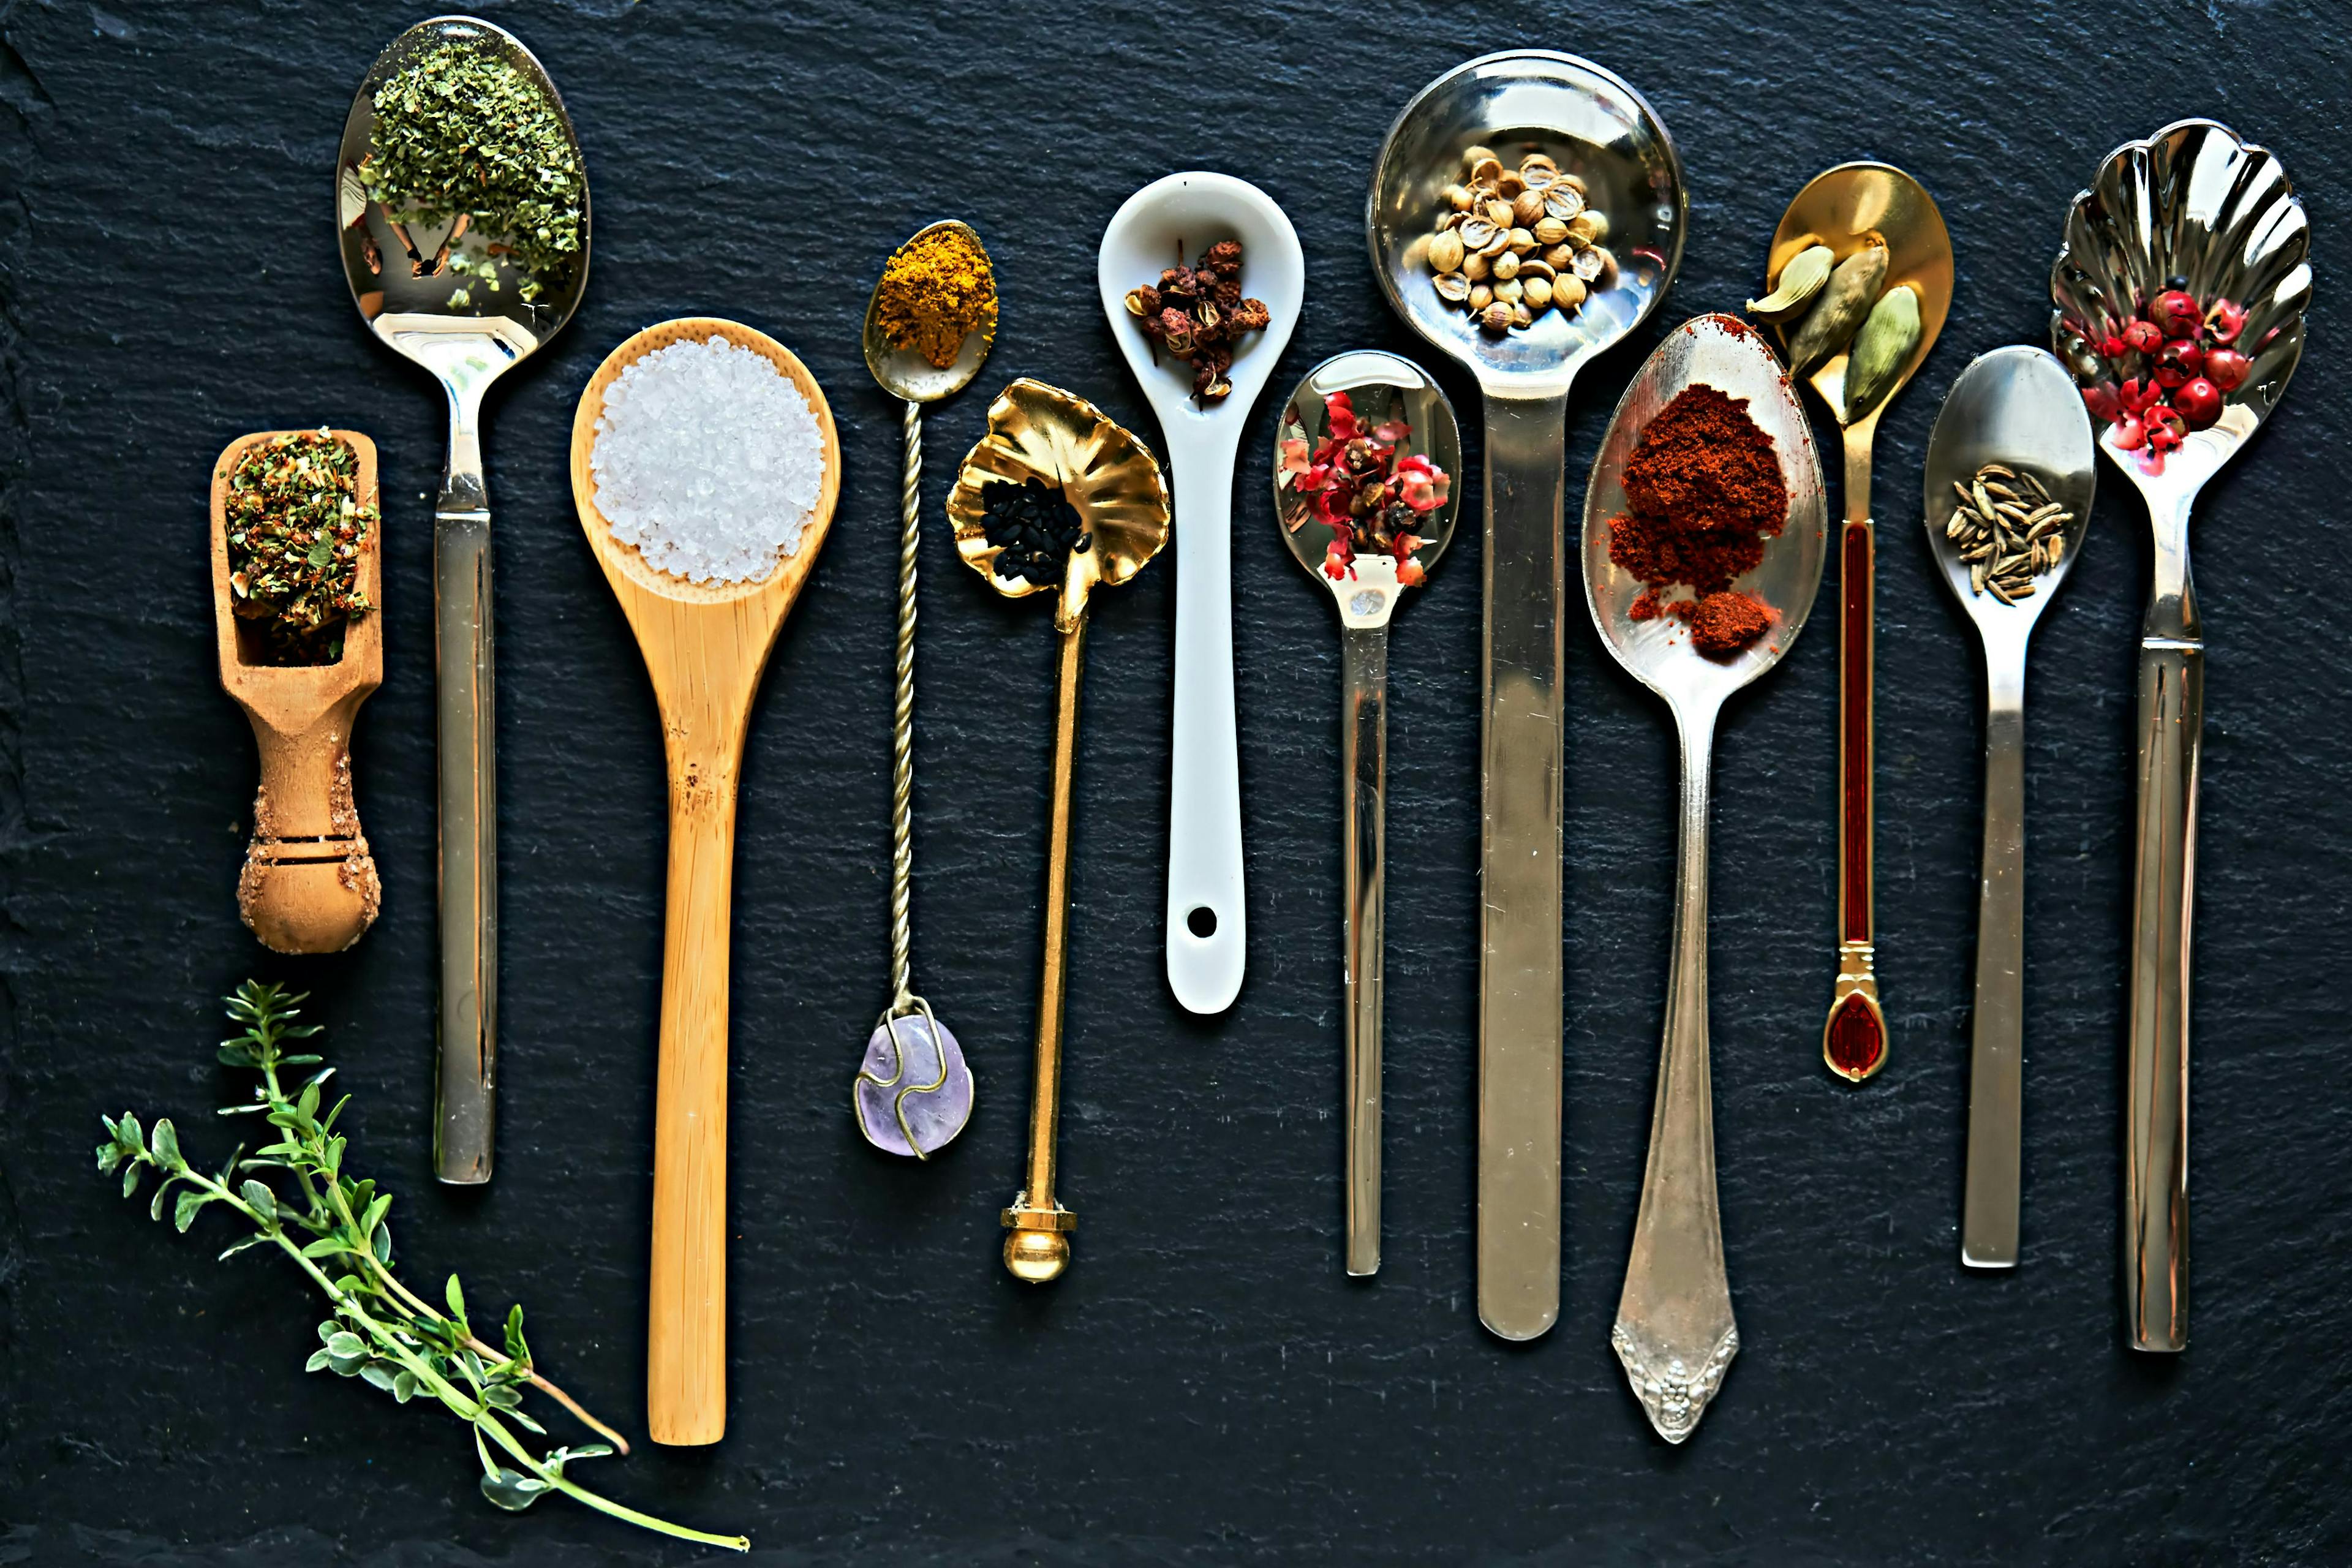 cutlery spoon